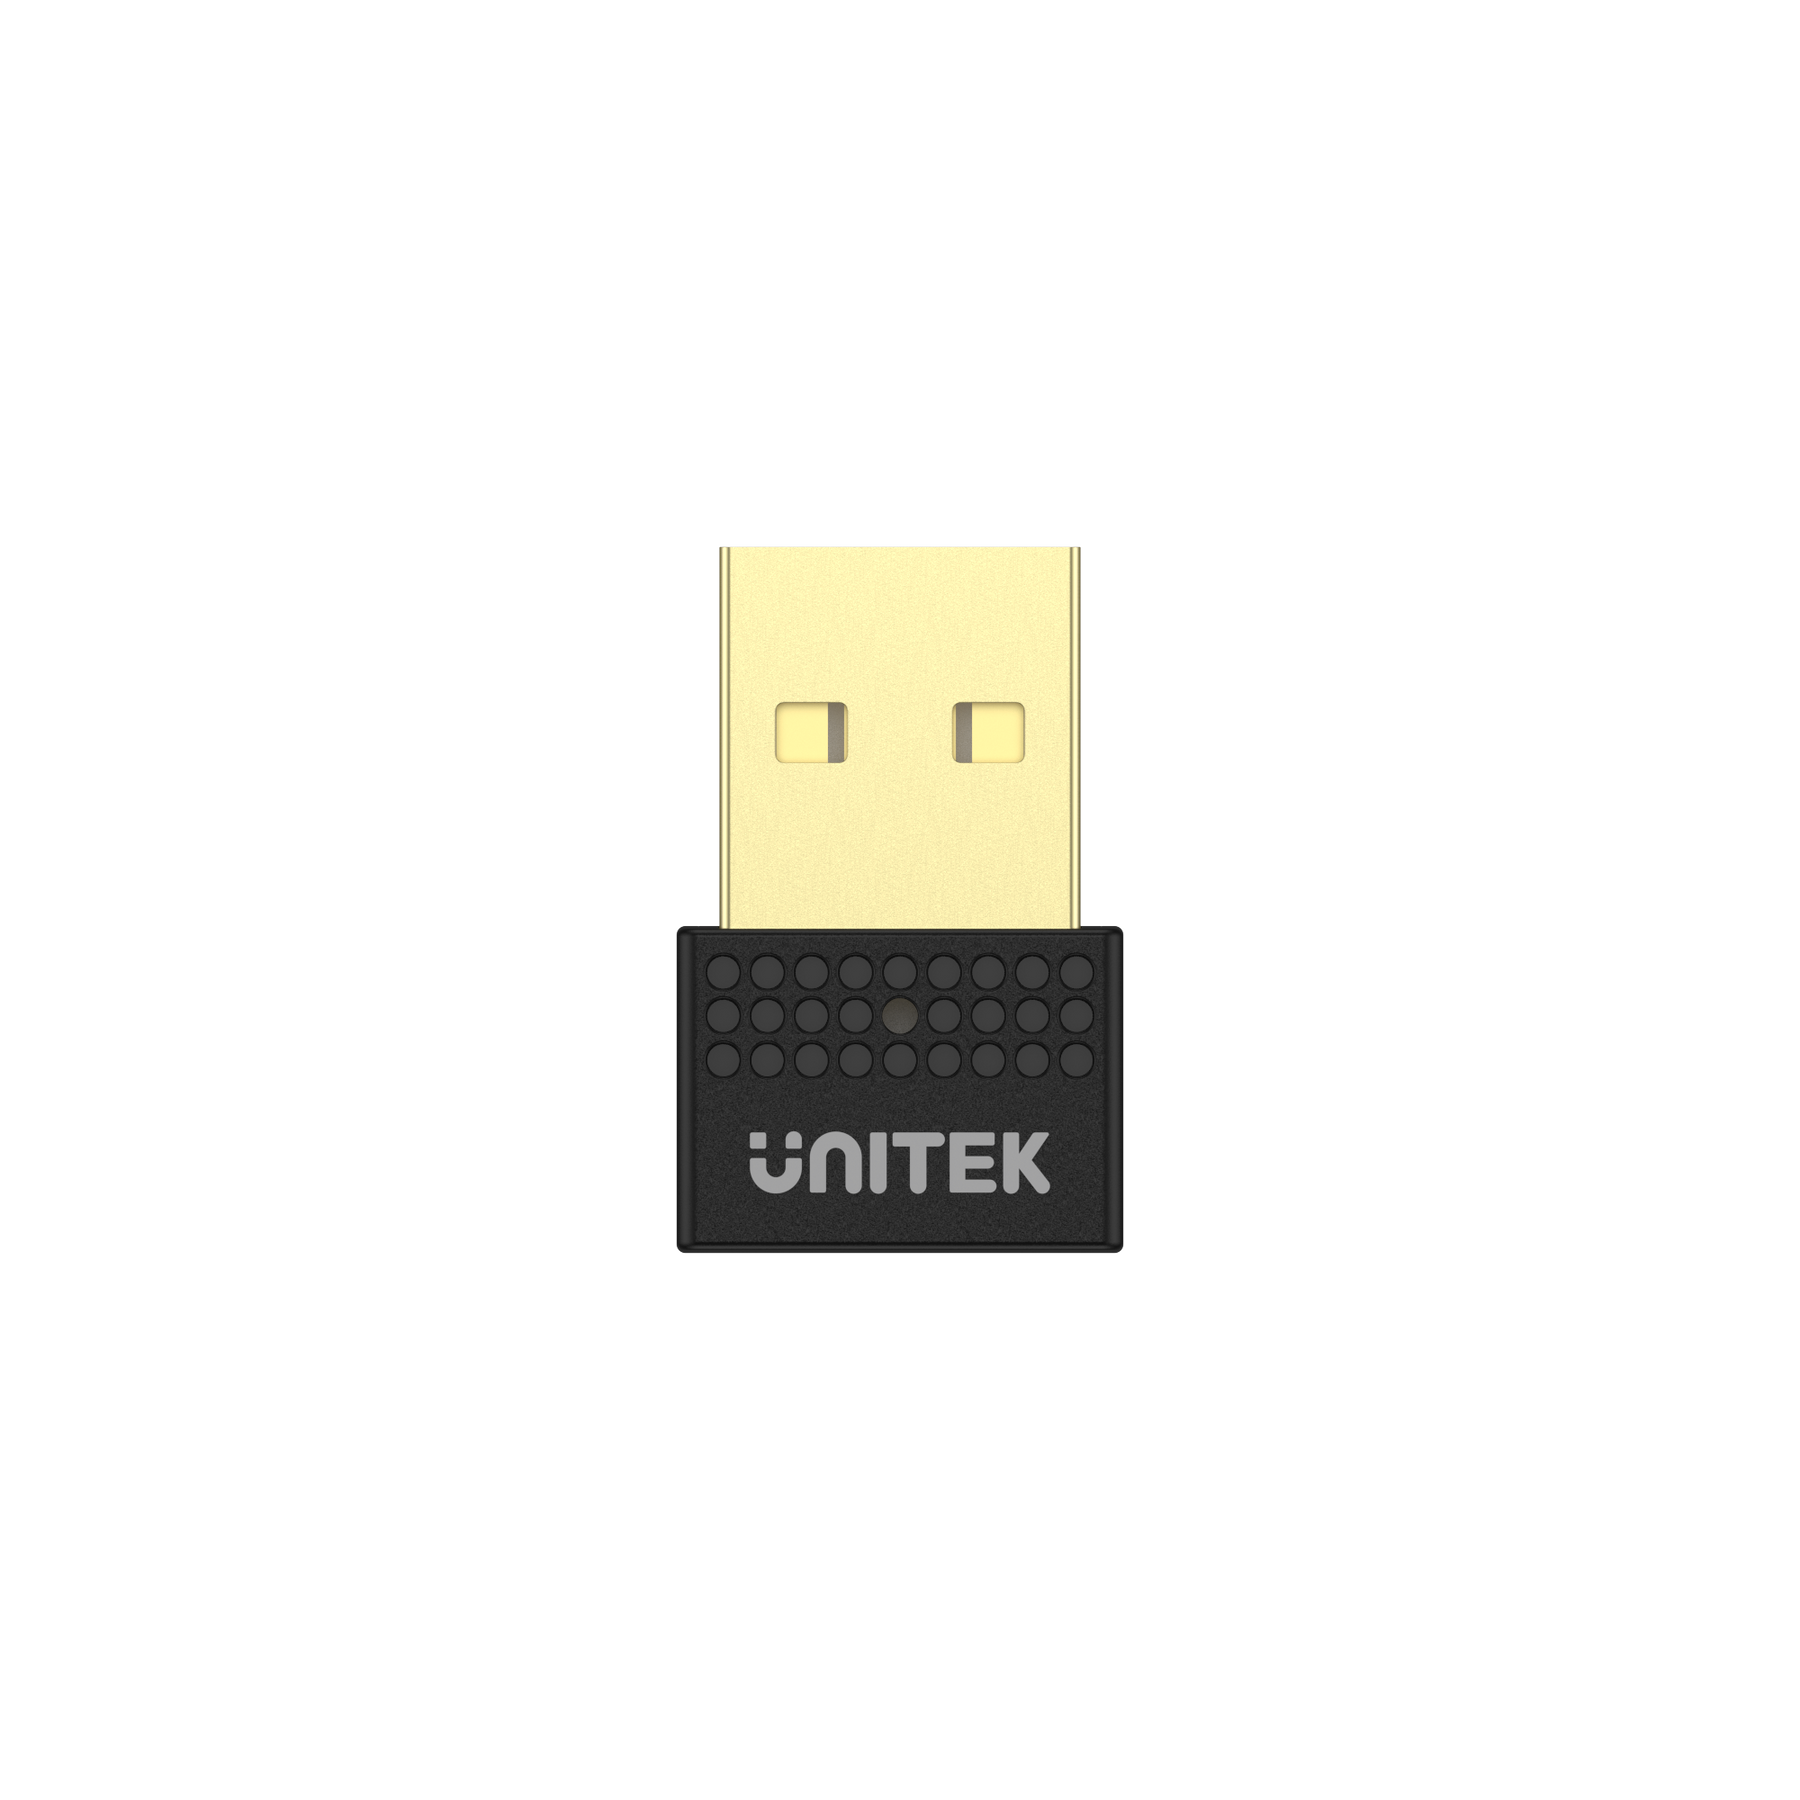 USB 藍牙 5.1 轉換器